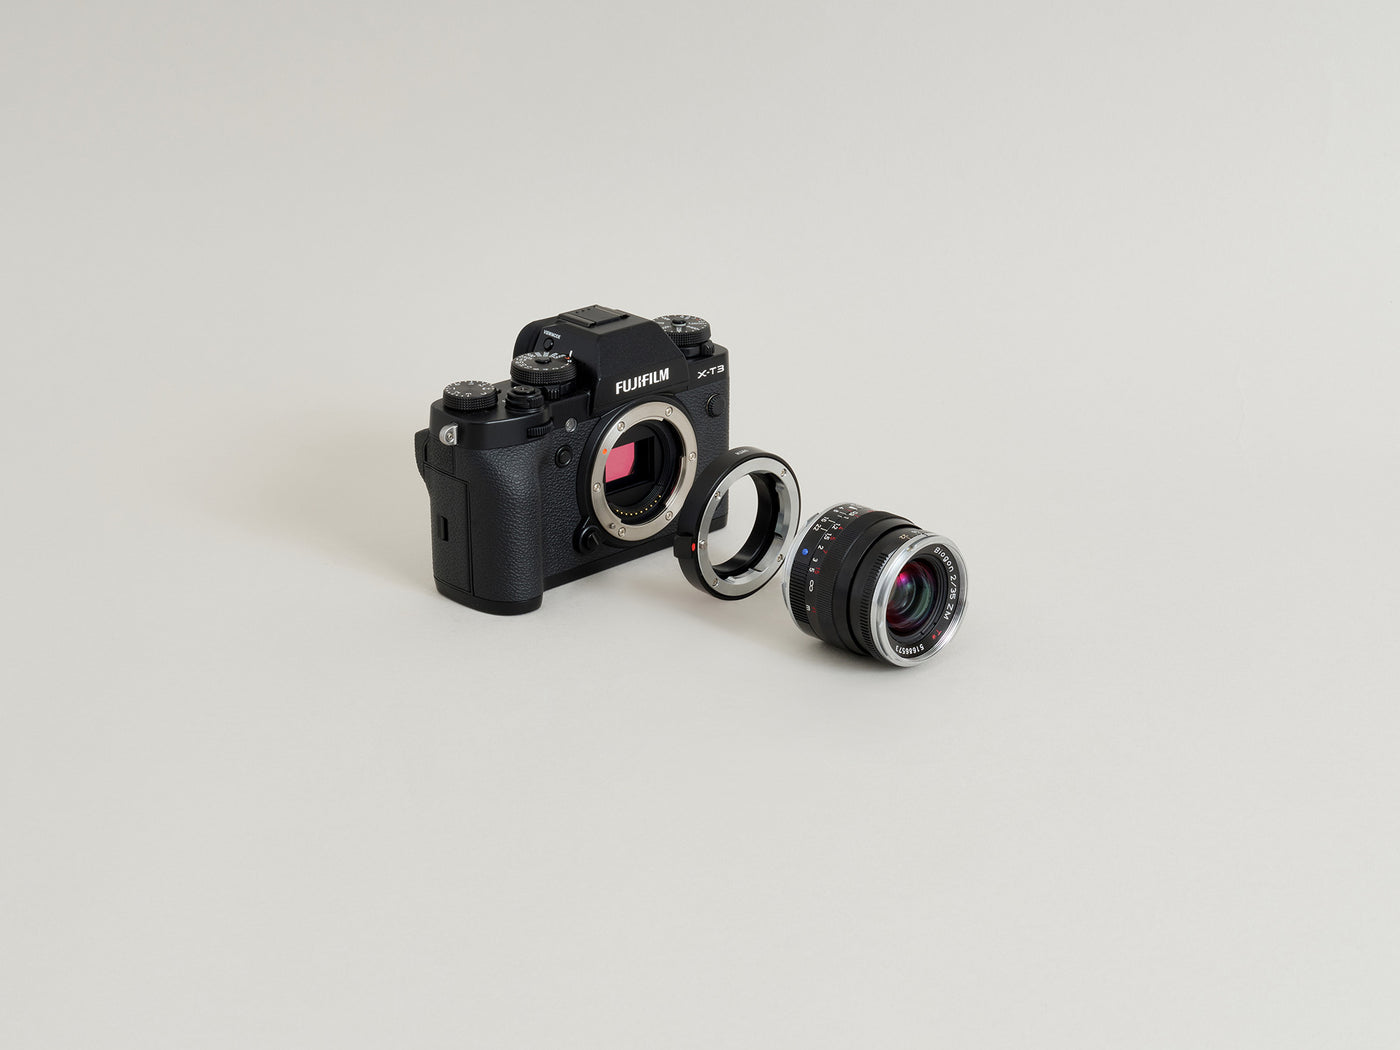 Leica M Lens Mount to Fujifilm X Camera Mount